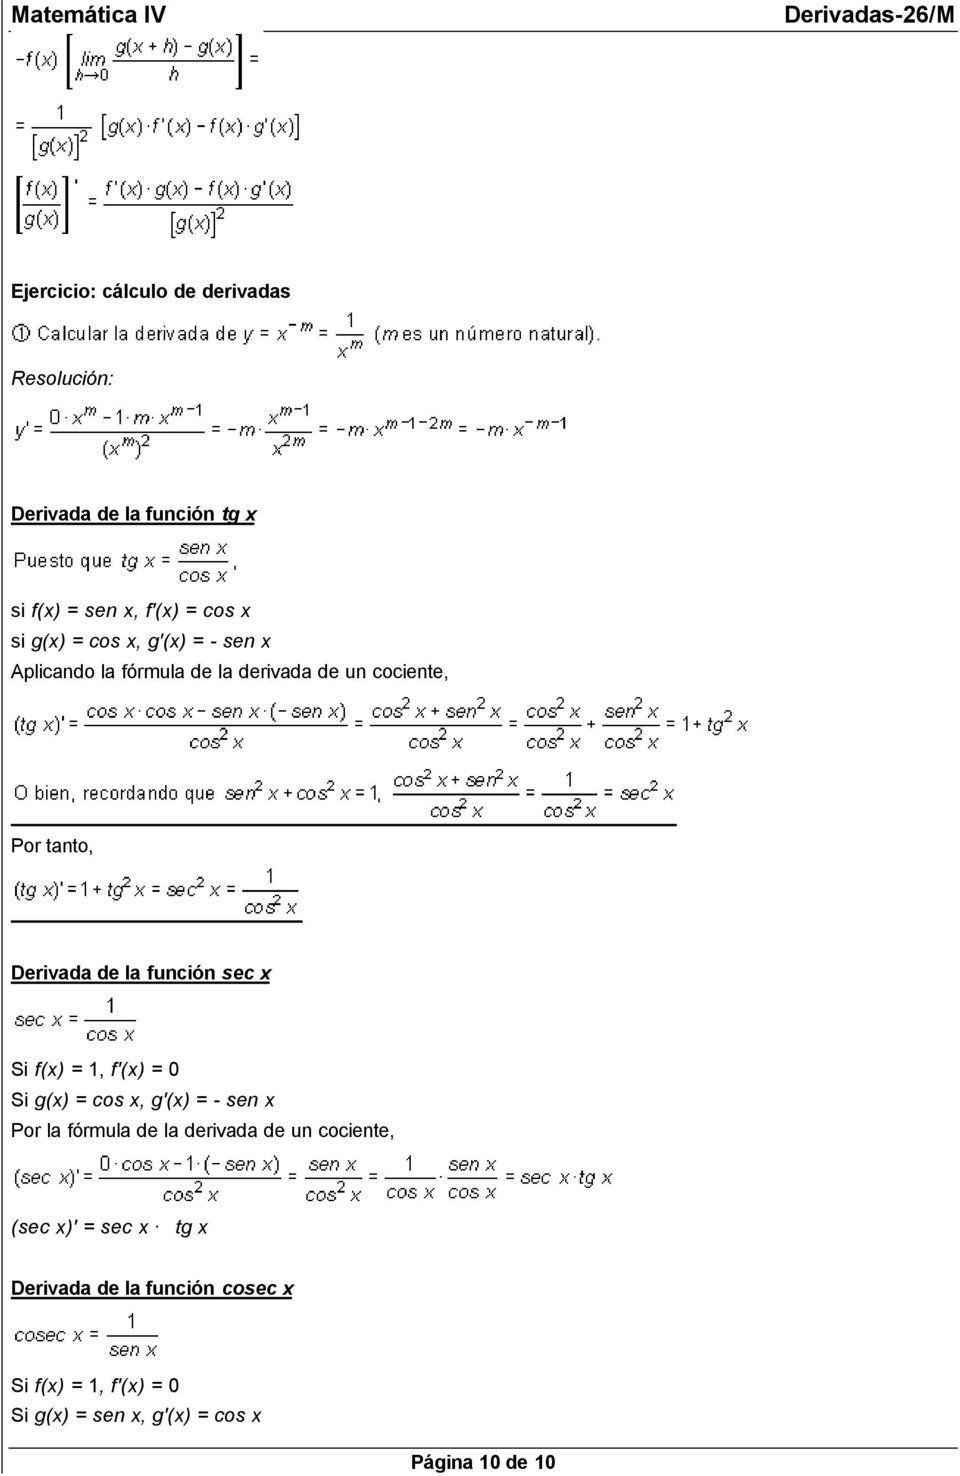 Si f(x) = 1, f'(x) = 0 Si g(x) = cos x, g'(x) = - sen x Por la fórmula de la derivada de un cociente, (sec